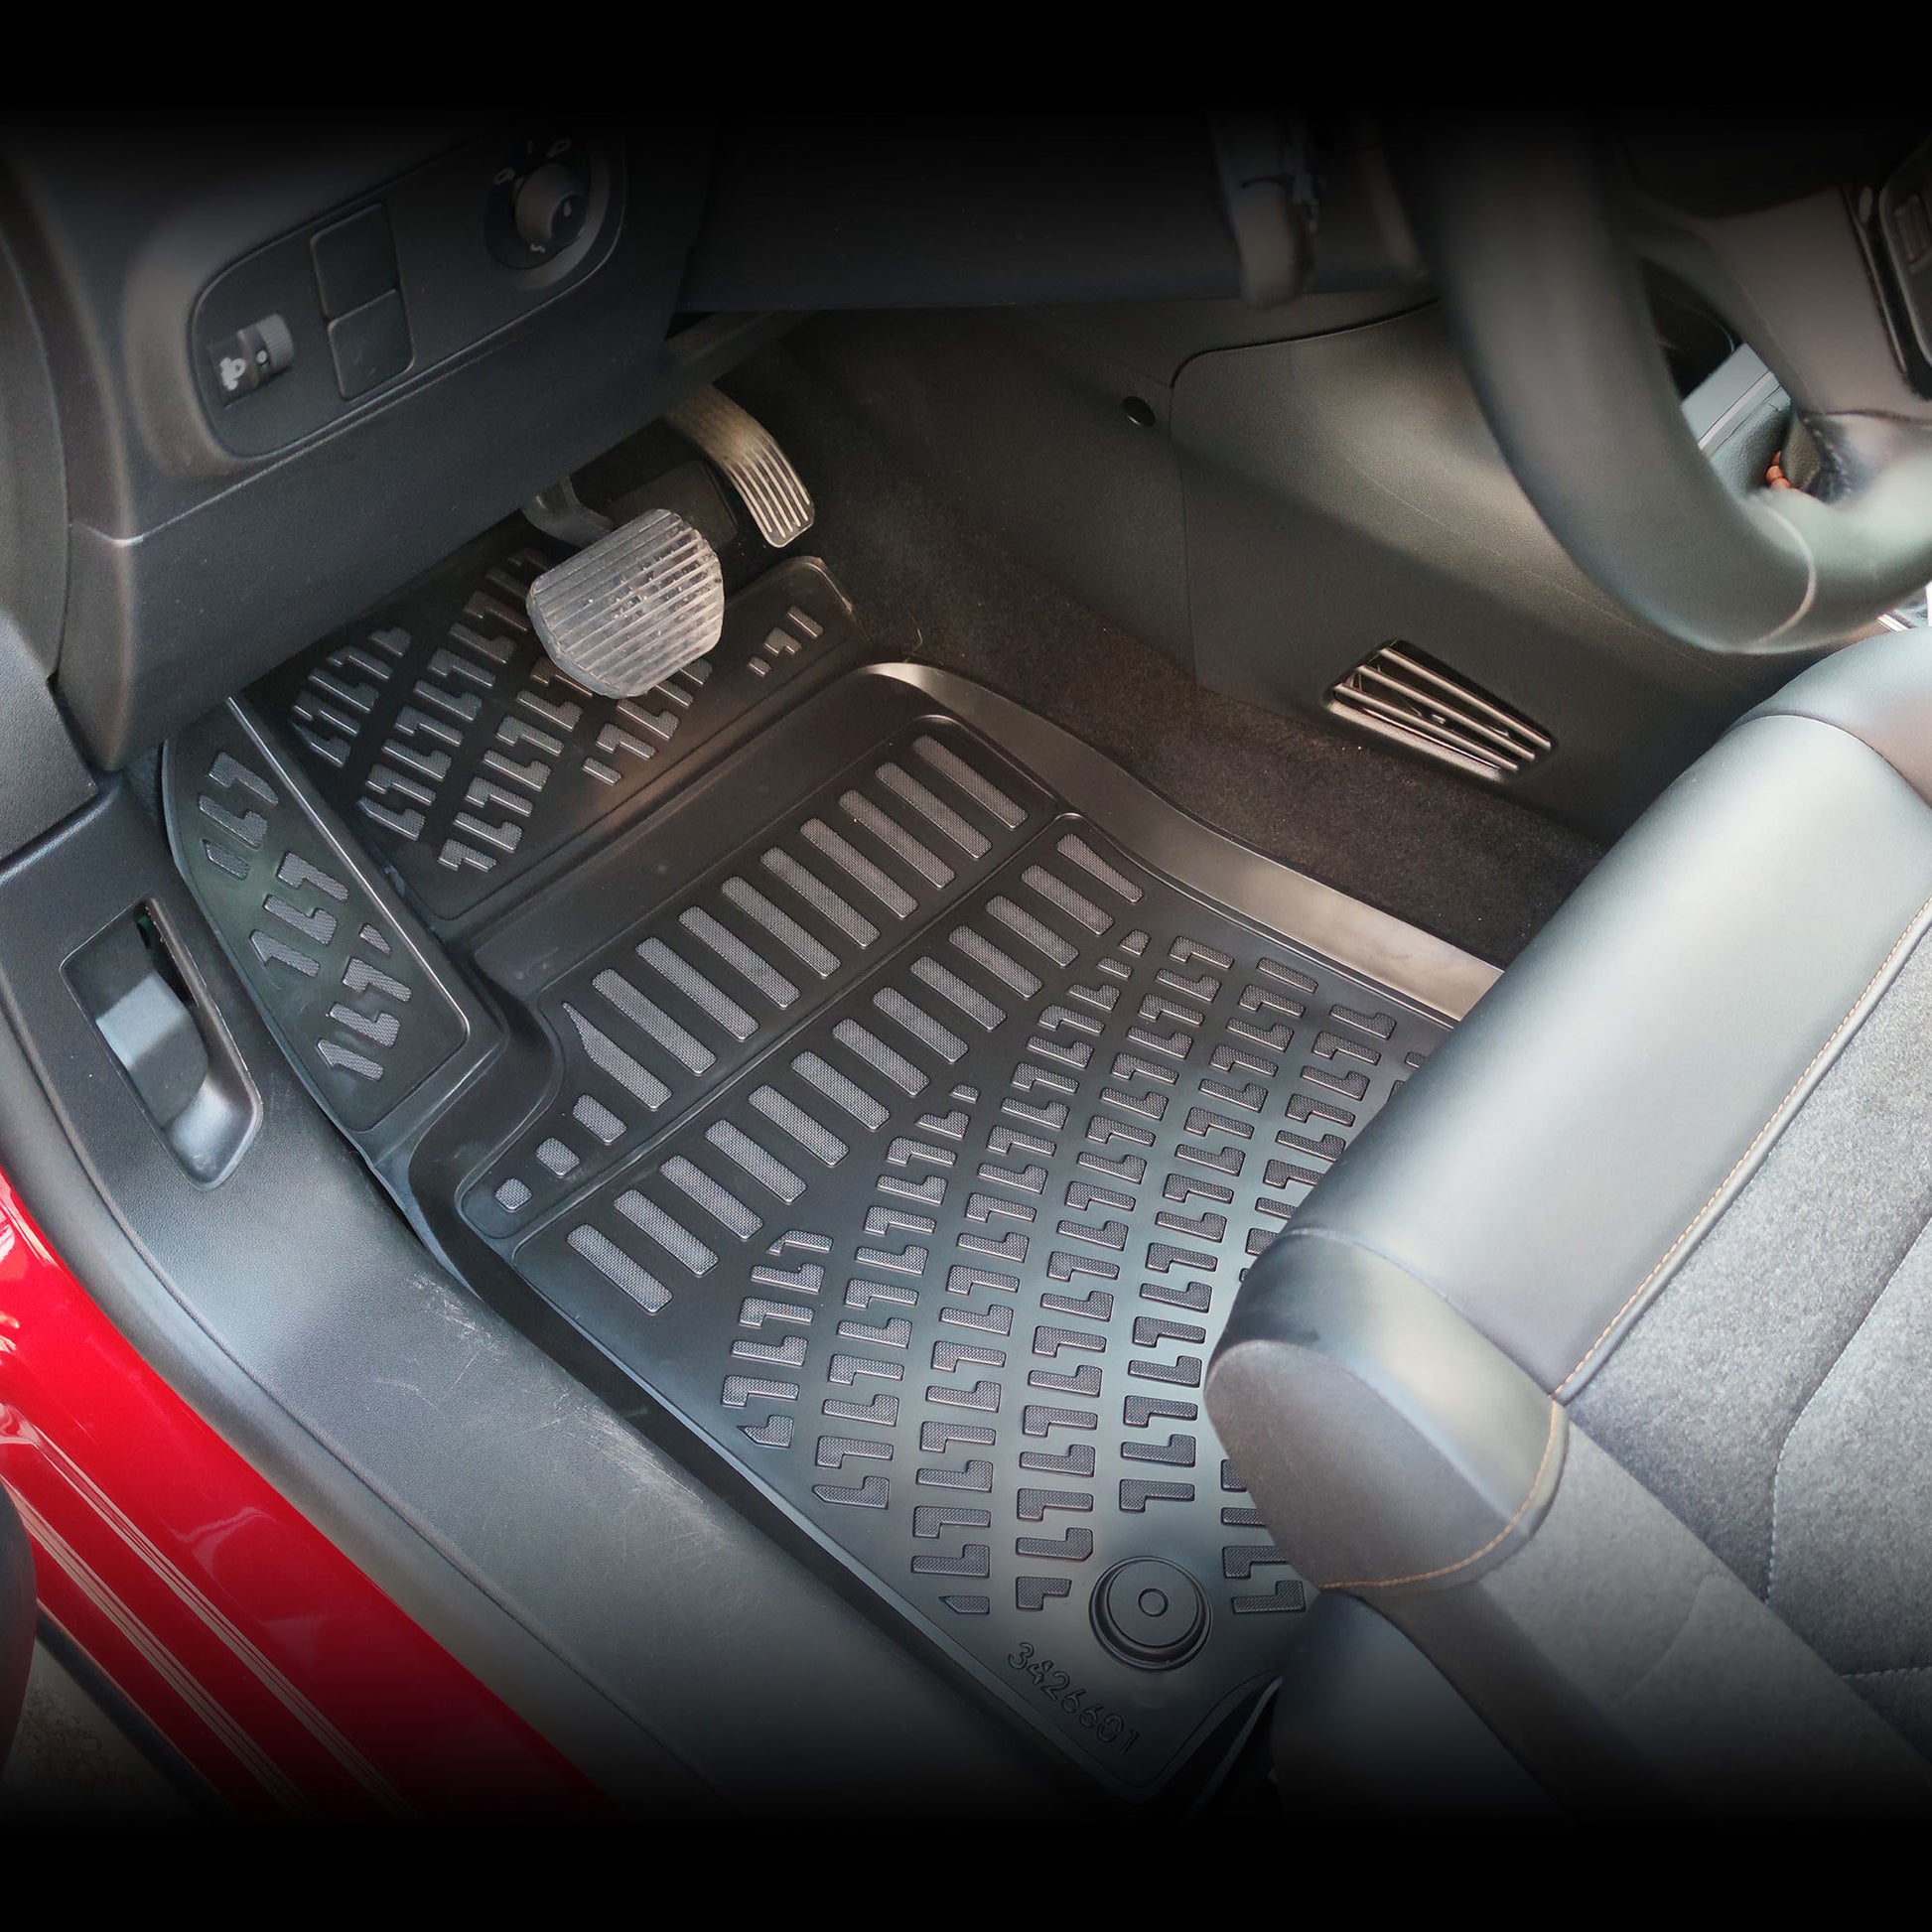 Honda Civic Kauçuk Paspas Aksesuarları Detaylı Resimleri, Kampanya bilgileri ve fiyatı - 5